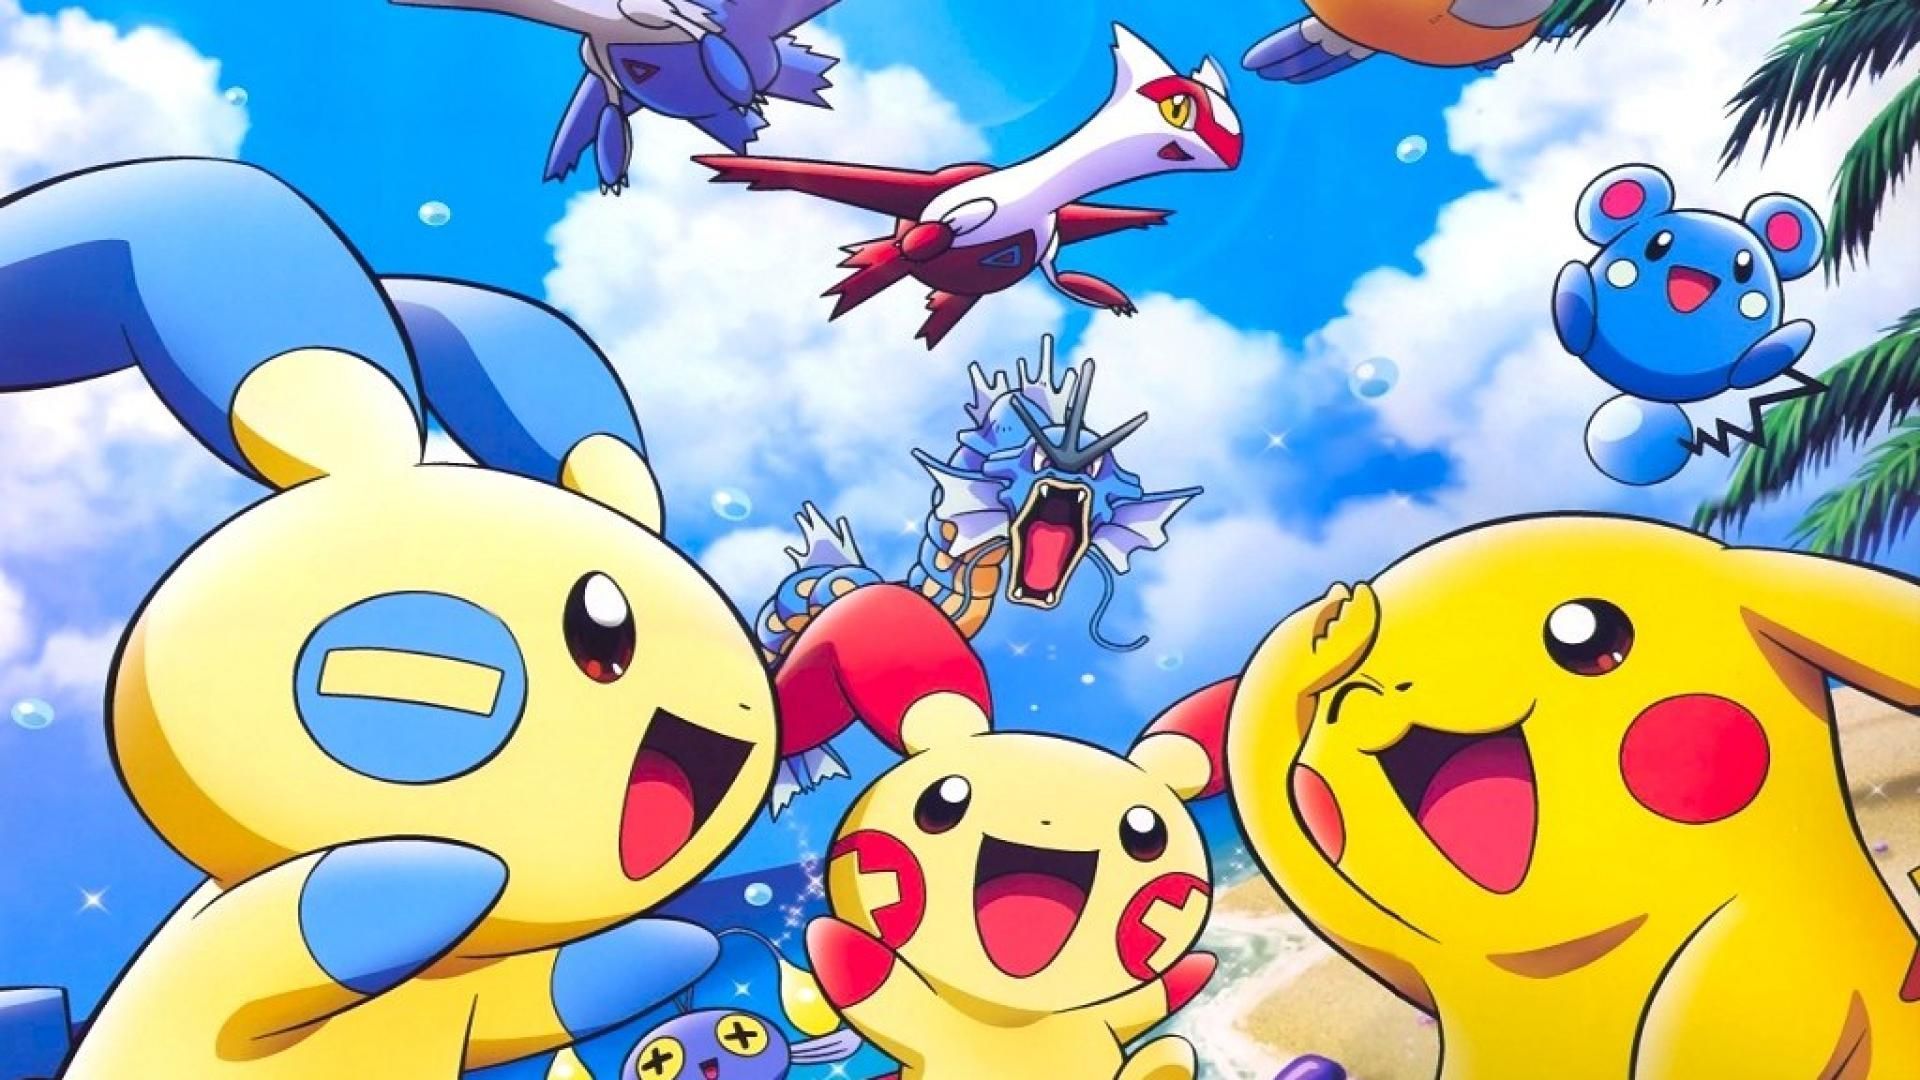 Với bộ sưu tập Pokemon Cartoon Wallpapers này, bạn sẽ được hòa mình vào thế giới đầy màu sắc và thú vị của Pokemon. Từ những chú Pikachu đáng yêu đến những chiếc bóng pokemon ma thuật, bạn sẽ không khỏi ngạc nhiên và thích thú. Hãy cùng đắm mình trong những hình ảnh động này để tăng thêm niềm đam mê của mình.